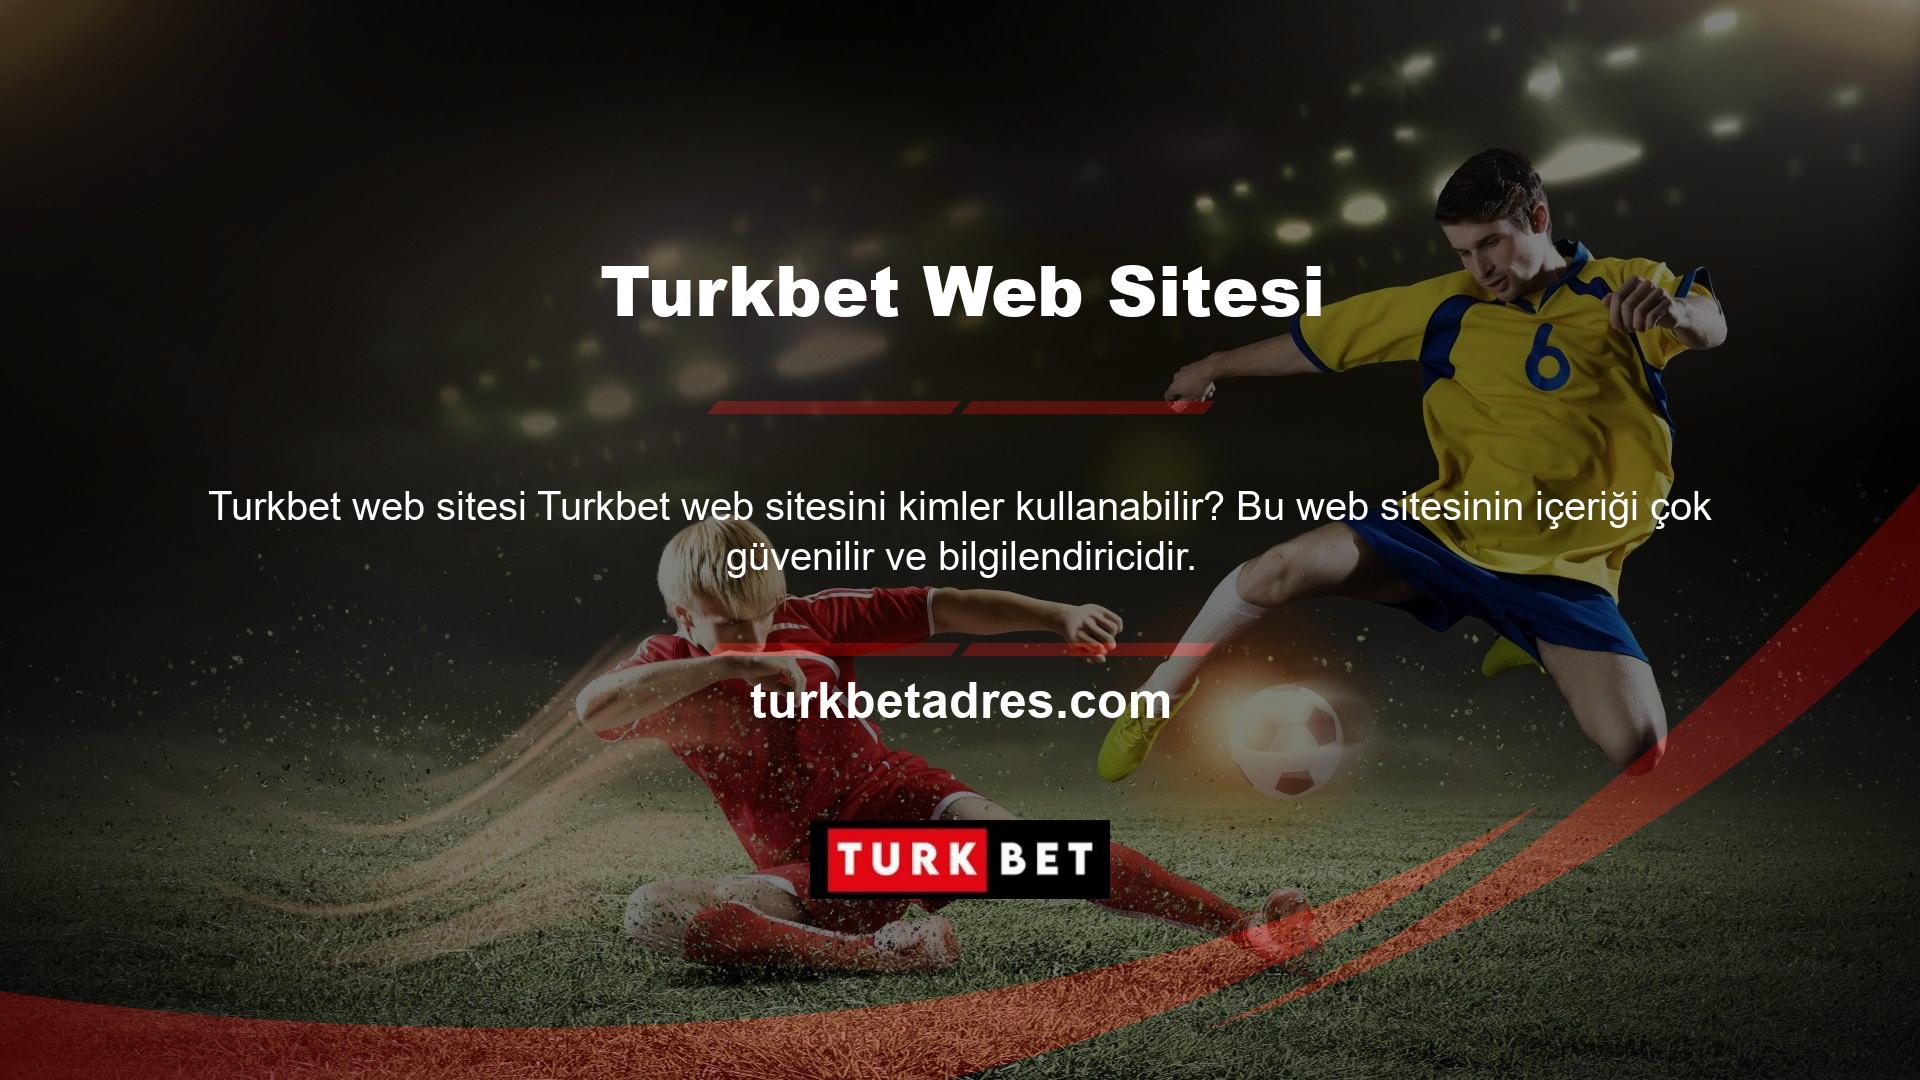 Bahisçilerden gelen en garip sorulardan biri Turkbet web sitesini kimlerin kullanabileceğidir